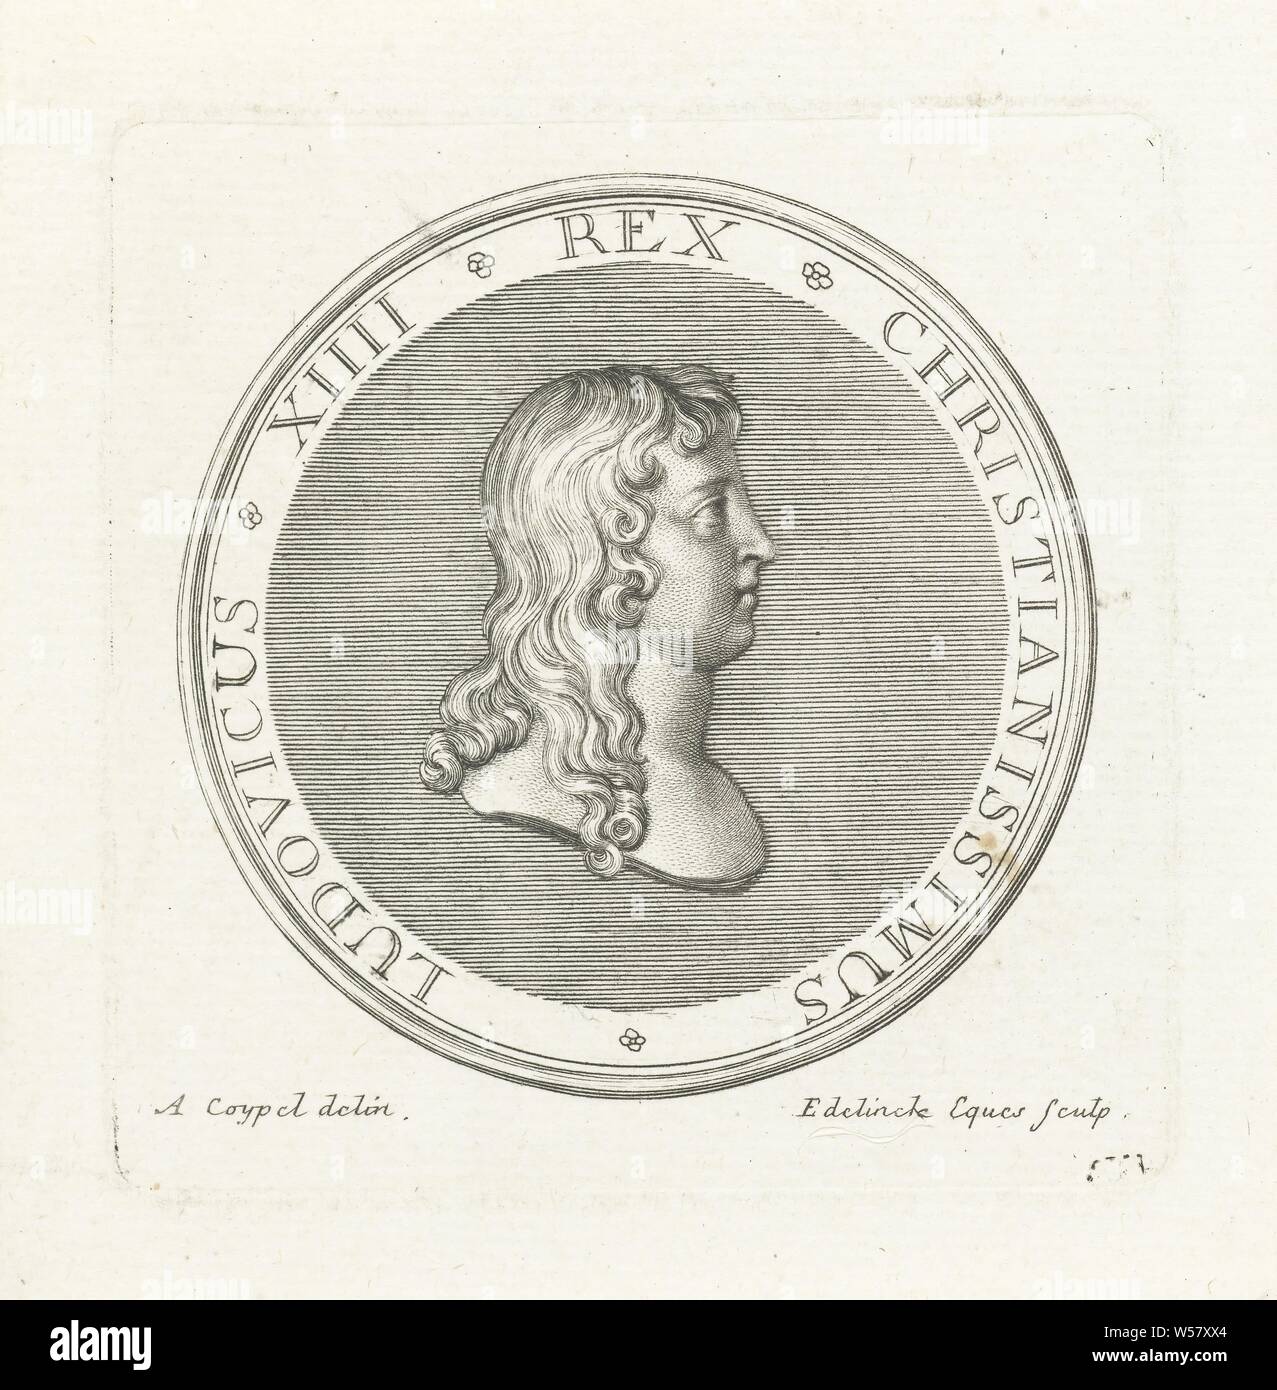 Medalla con busto de Louis XIV, delante de una insignia con busto y perfil de Louis XIV, primera emitida después de la batalla de Rocroi en 1643, Louis XIV (Rey de Francia), Gerard Edelinck (mencionado en la película), París, 1702, el papel, el grabado, la h 82 mm × 81 mm w Foto de stock